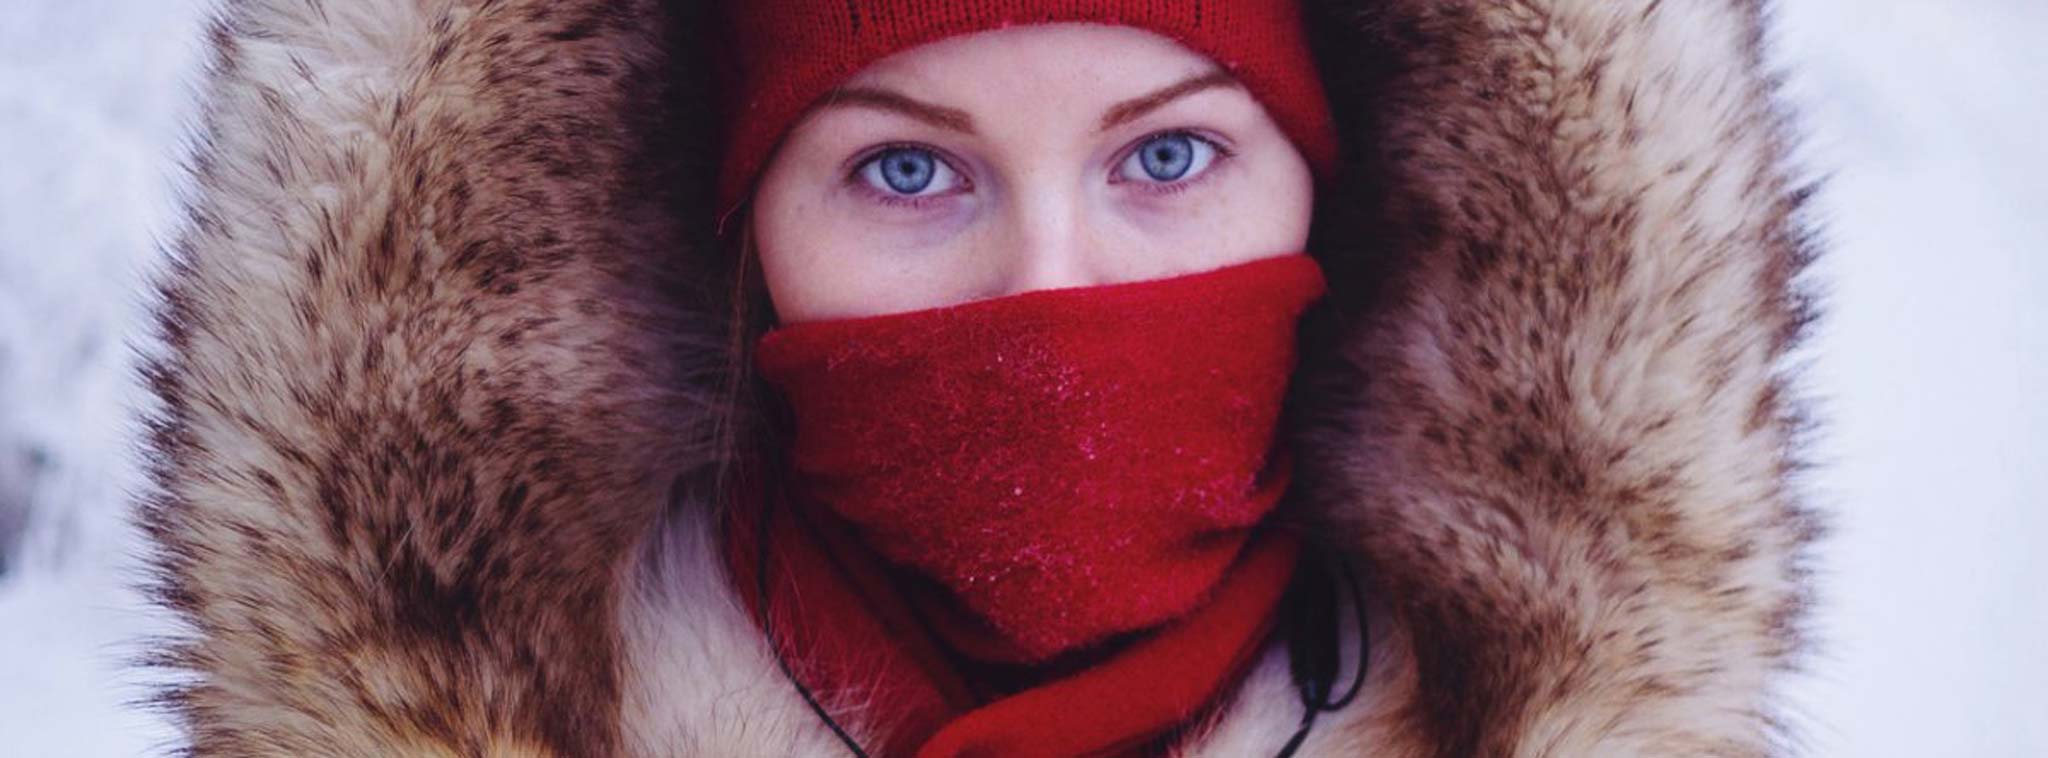 [Hình ảnh] Hành trình tới ngôi làng Oymyakon - nơi lạnh nhất mà con người sinh sống